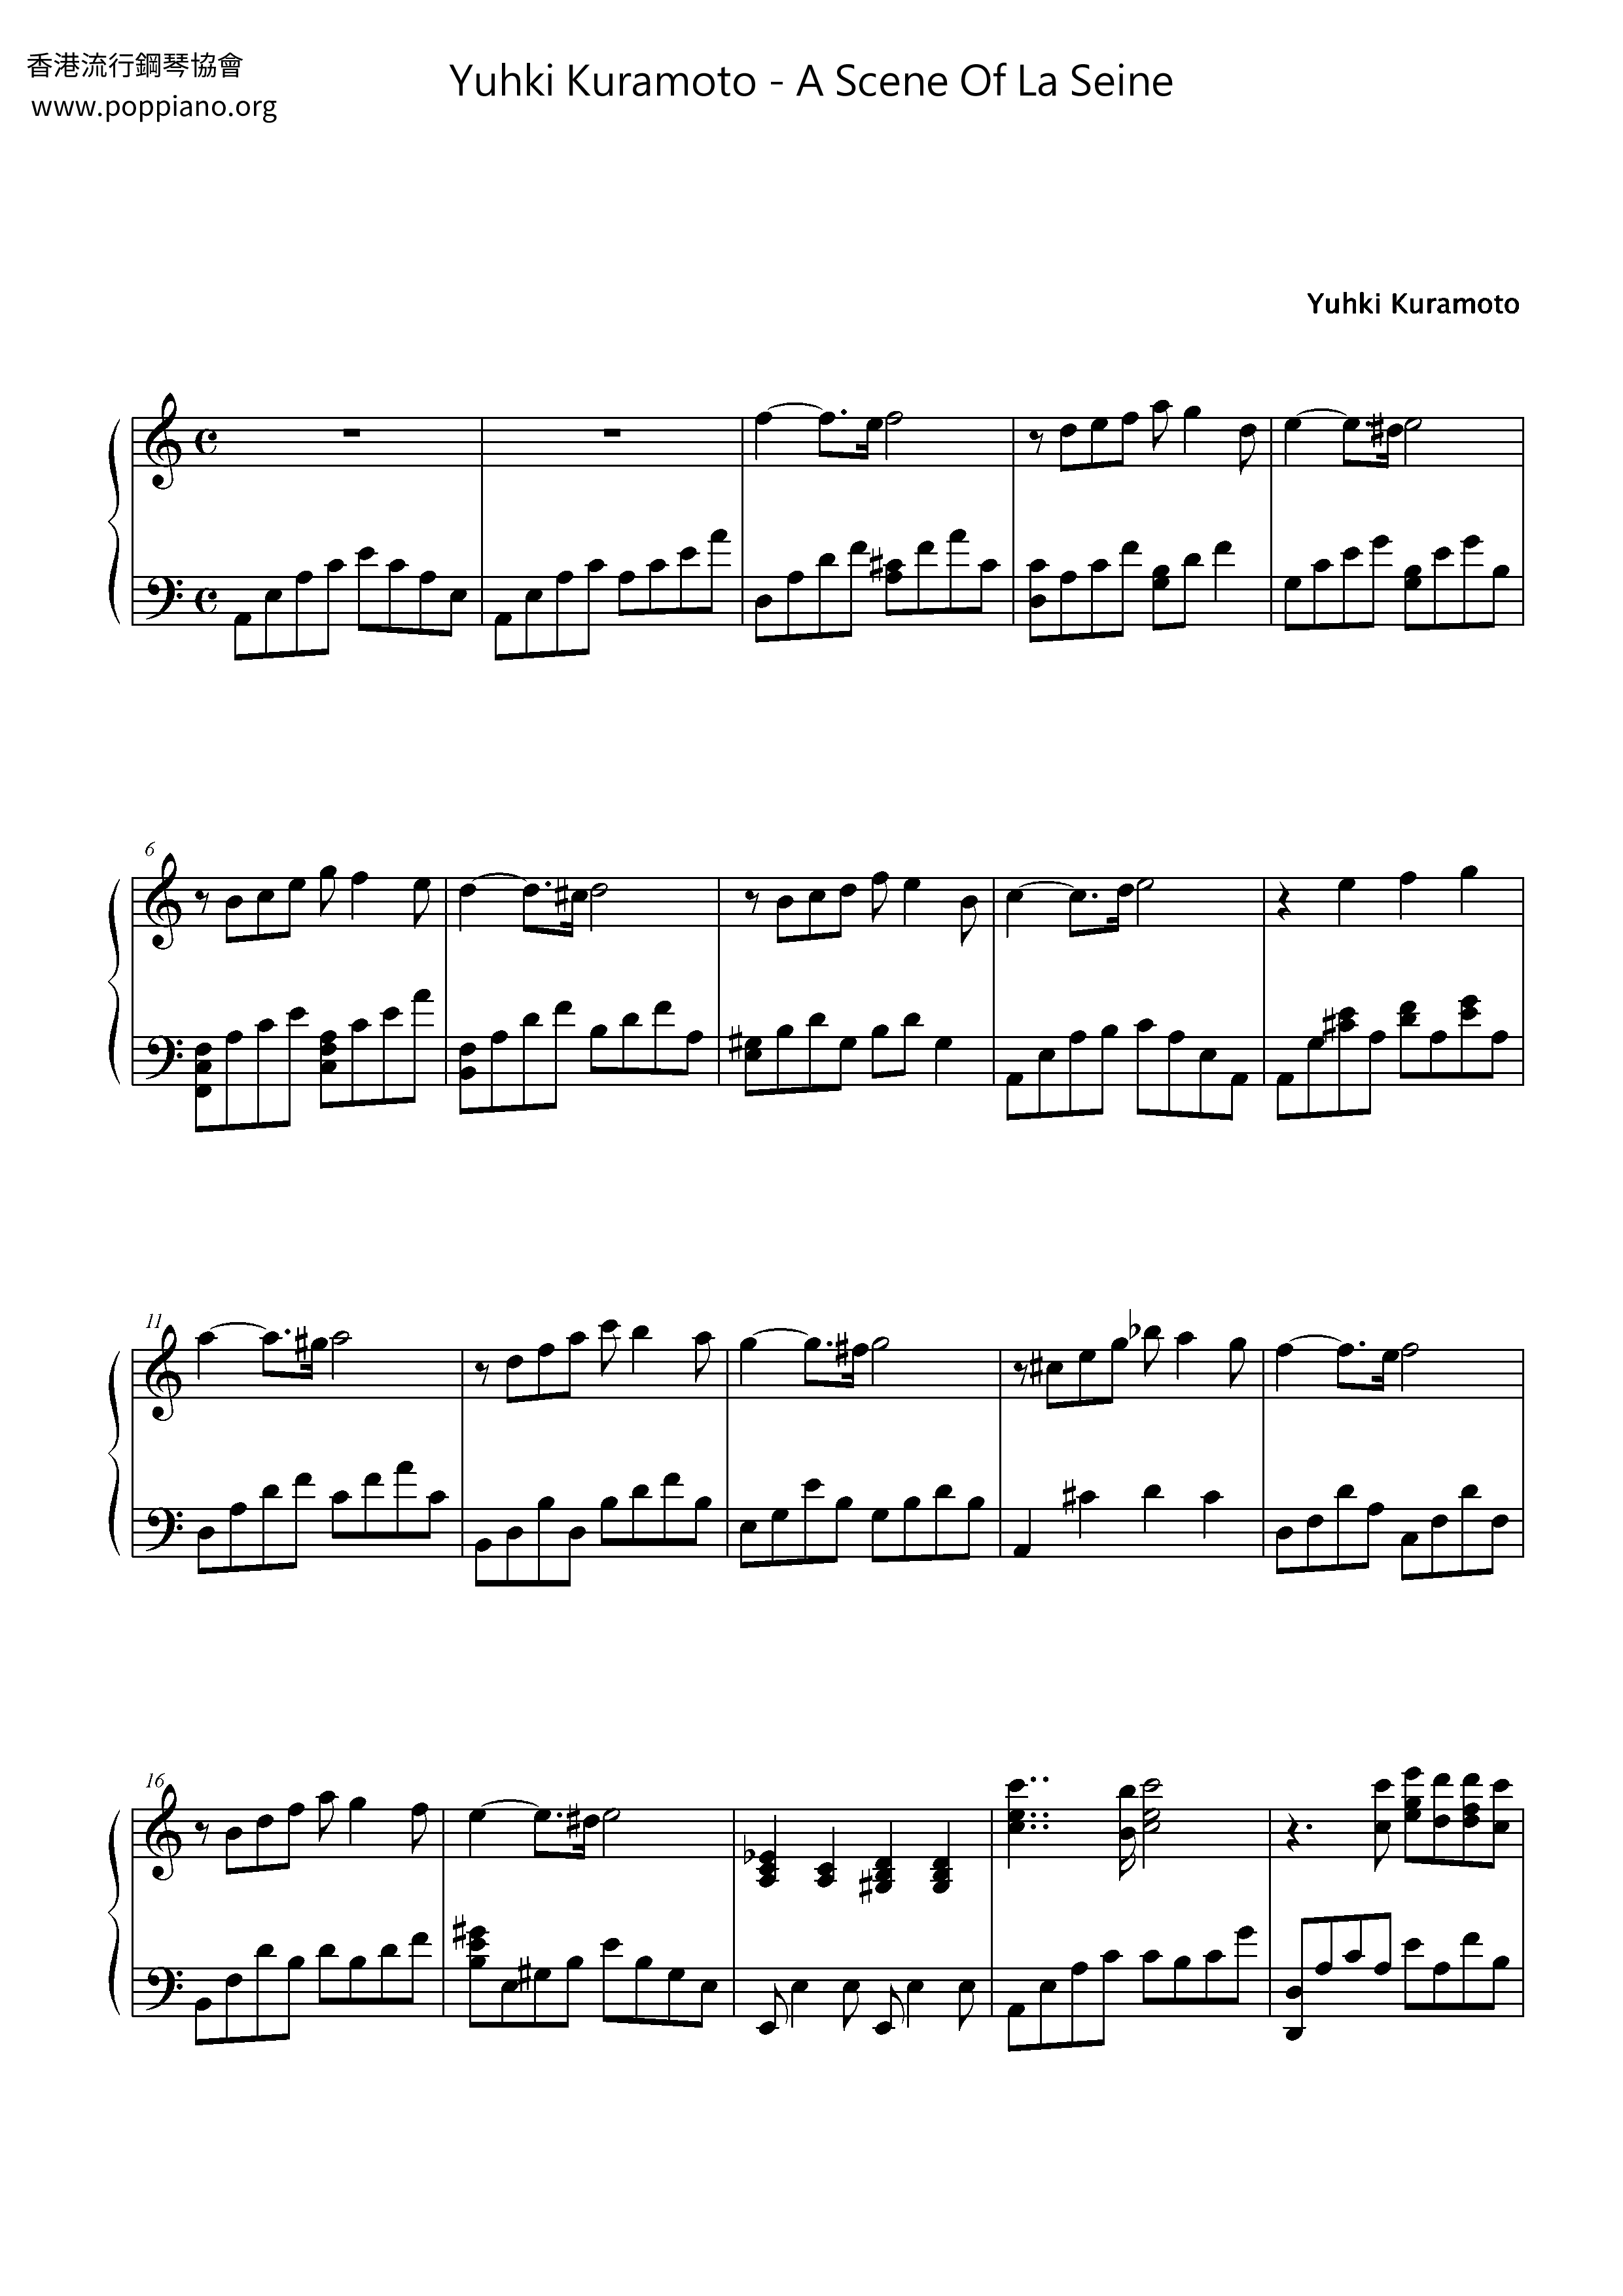 A Scene Of La Seine Score